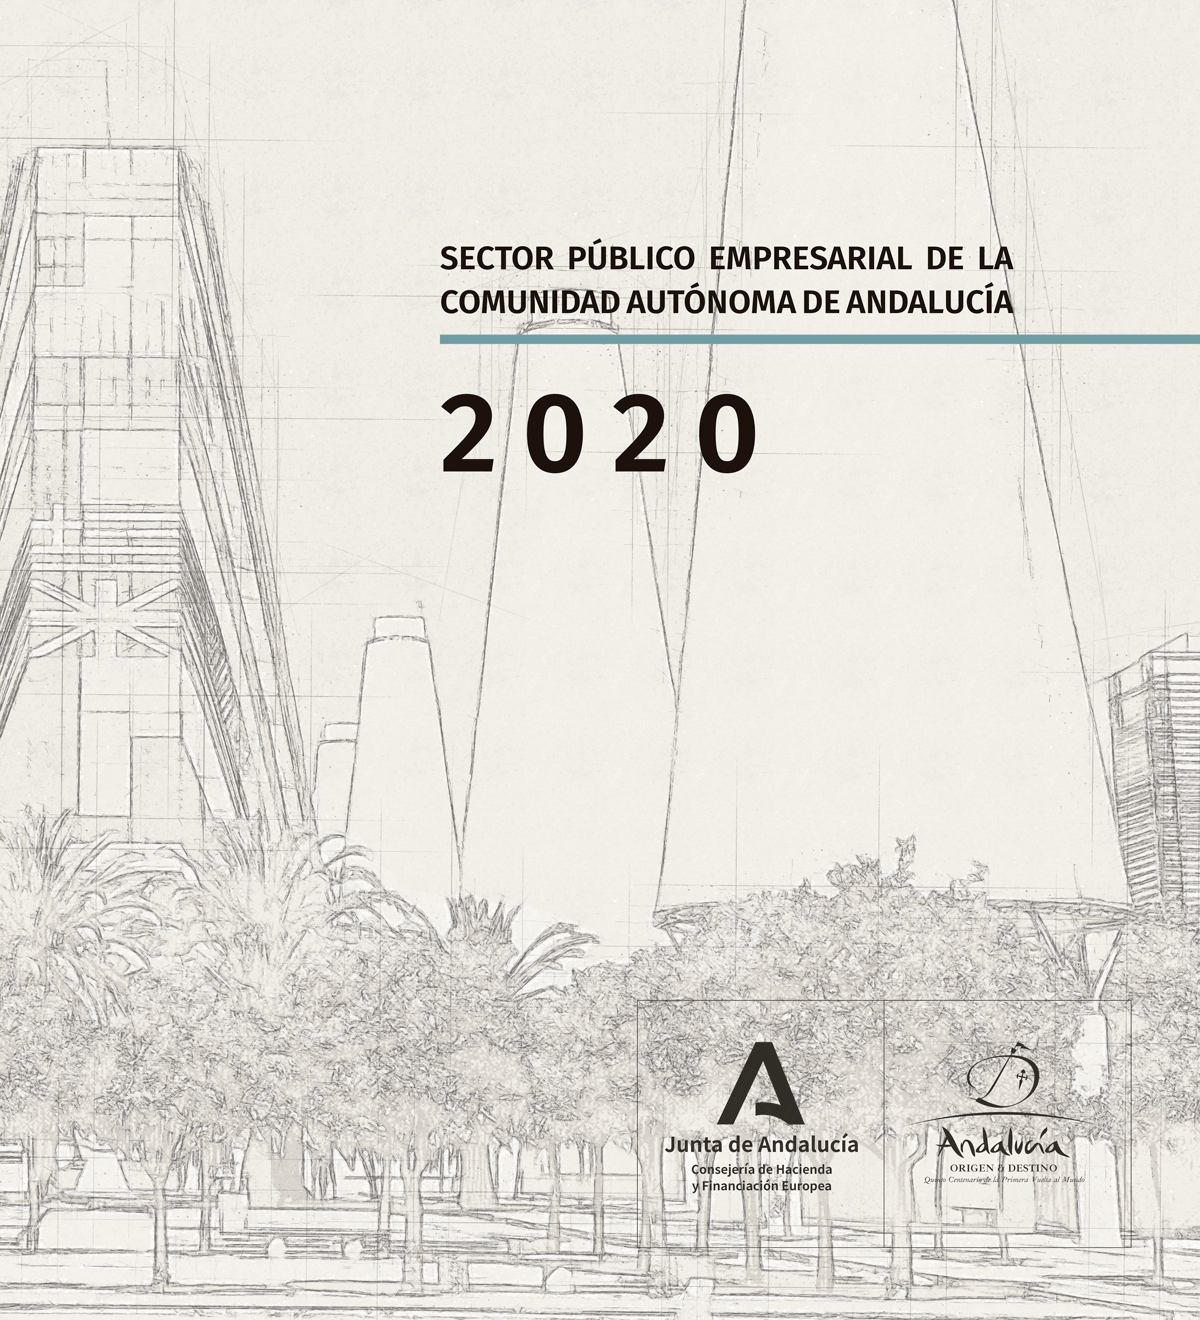 Sector Público Empresarial de la Comunidad Autónoma de Andalucía 2020